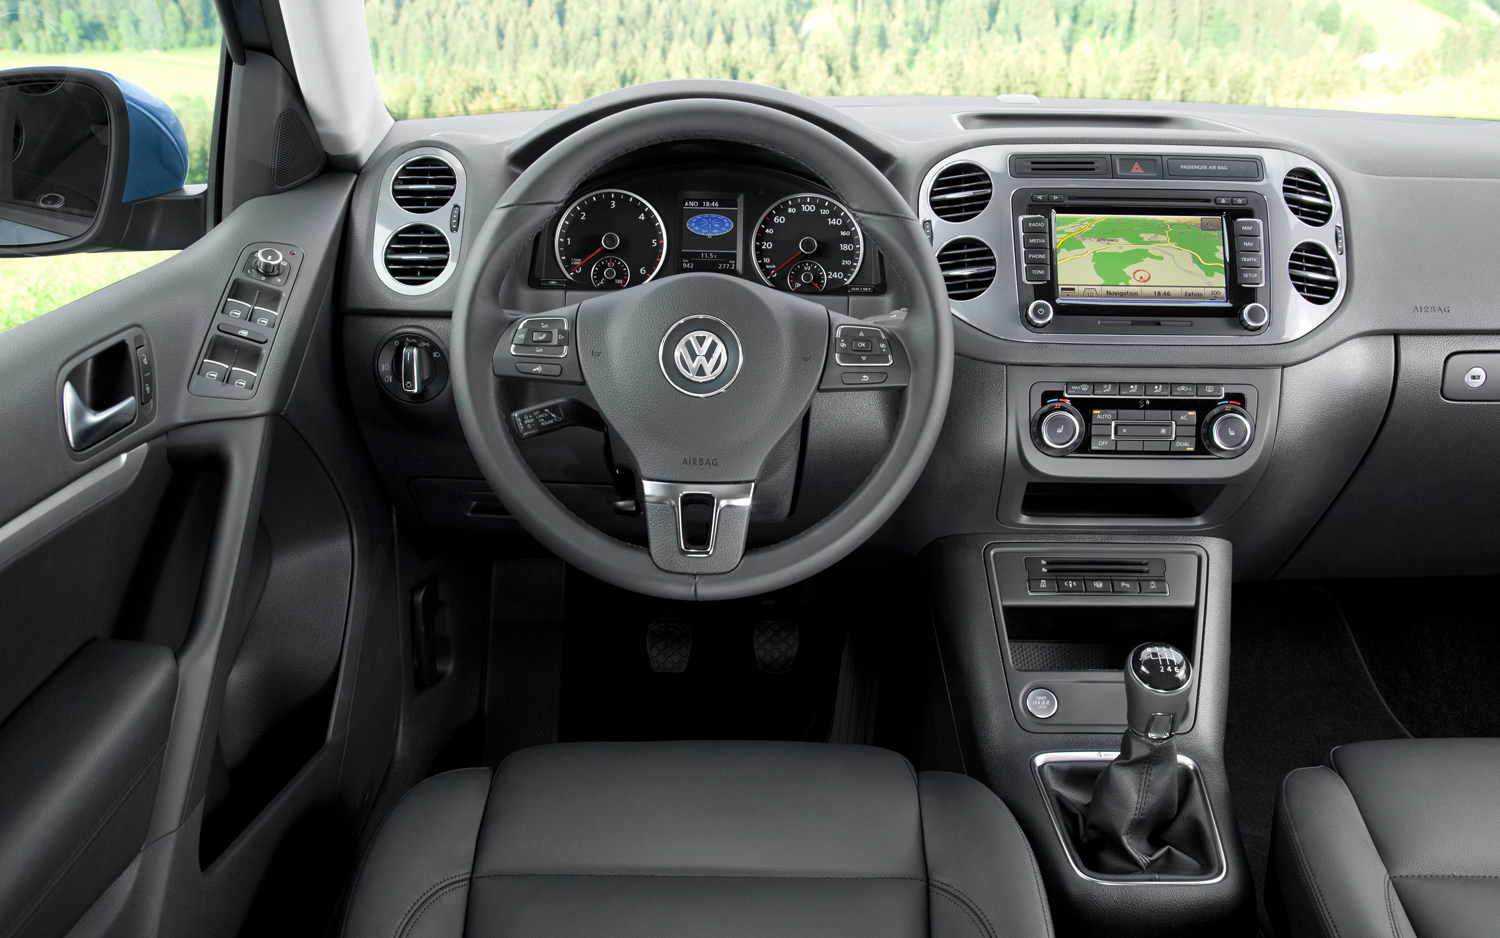 Volkswagen interior Image